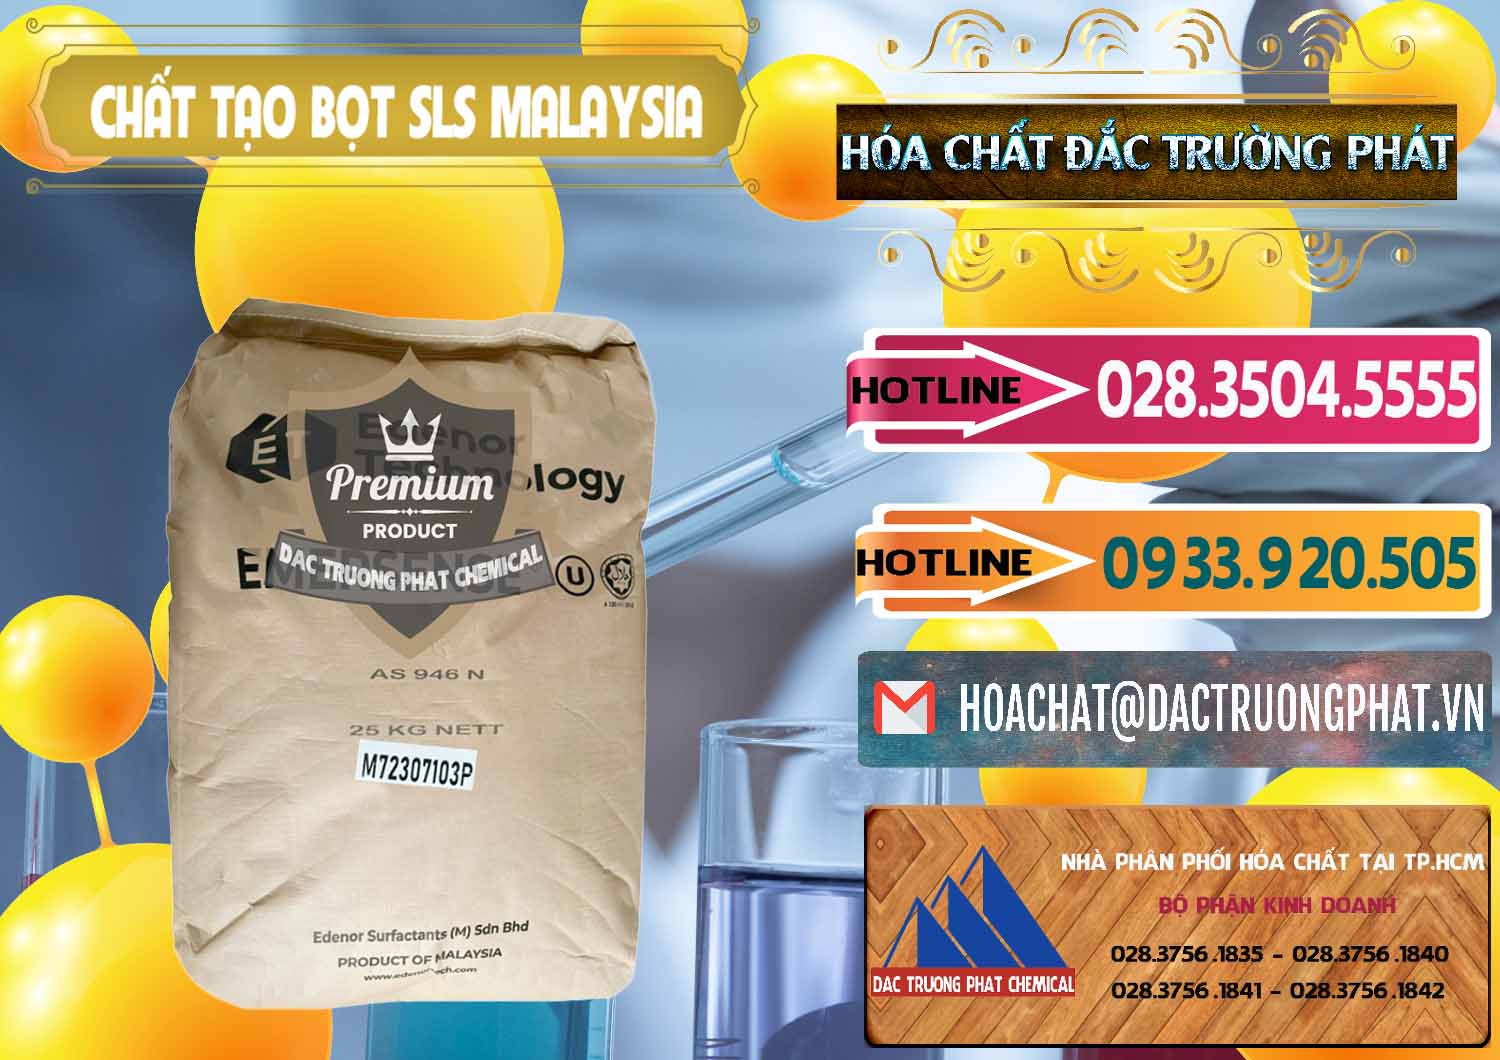 Chuyên bán _ cung ứng Chất Tạo Bọt SLS Emersense Mã Lai Malaysia - 0381 - Chuyên nhập khẩu & phân phối hóa chất tại TP.HCM - dactruongphat.vn